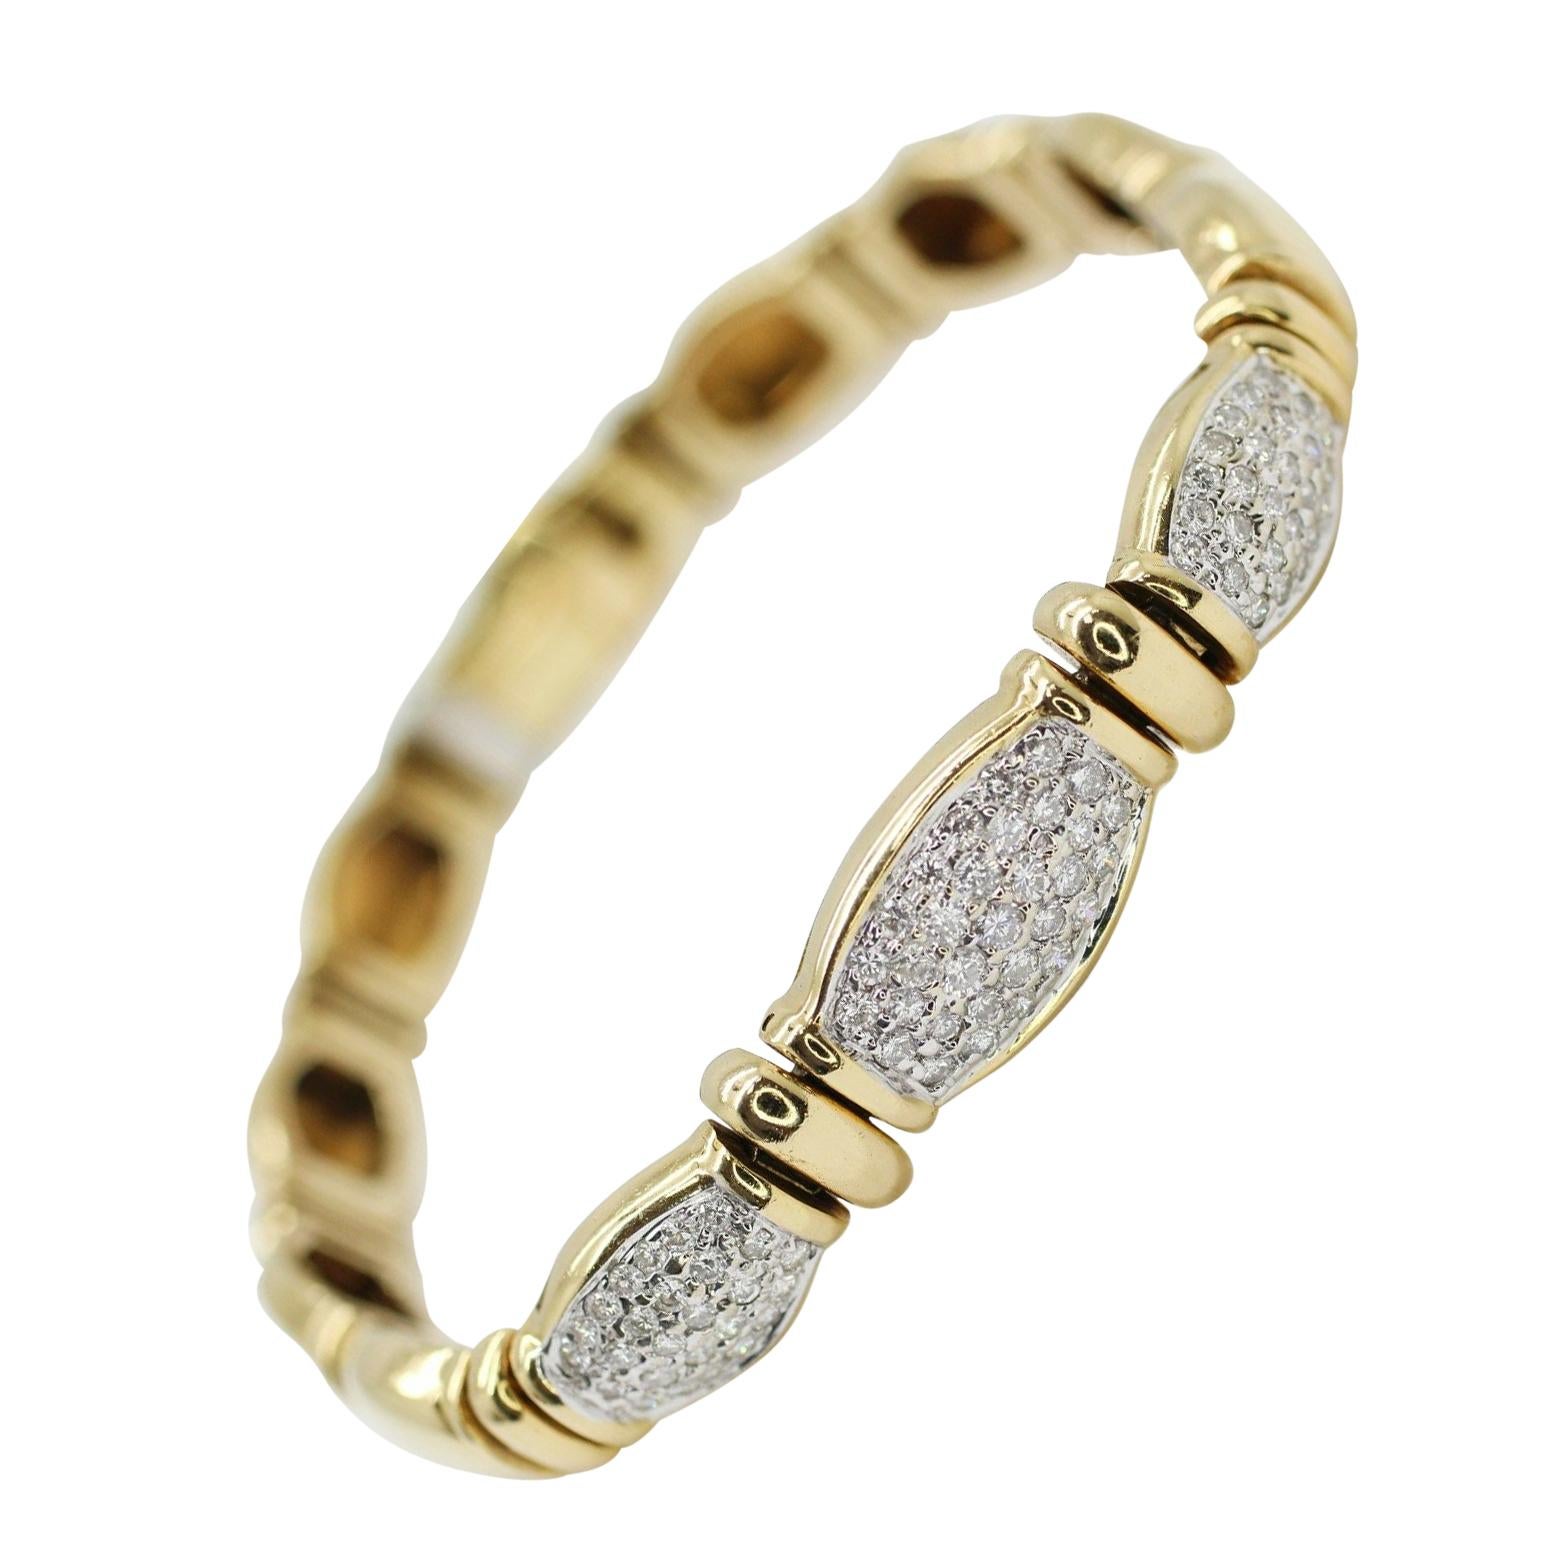 18 Karat Yellow Gold Diamonds Pave Bracelet, Containing 1.50 Carat